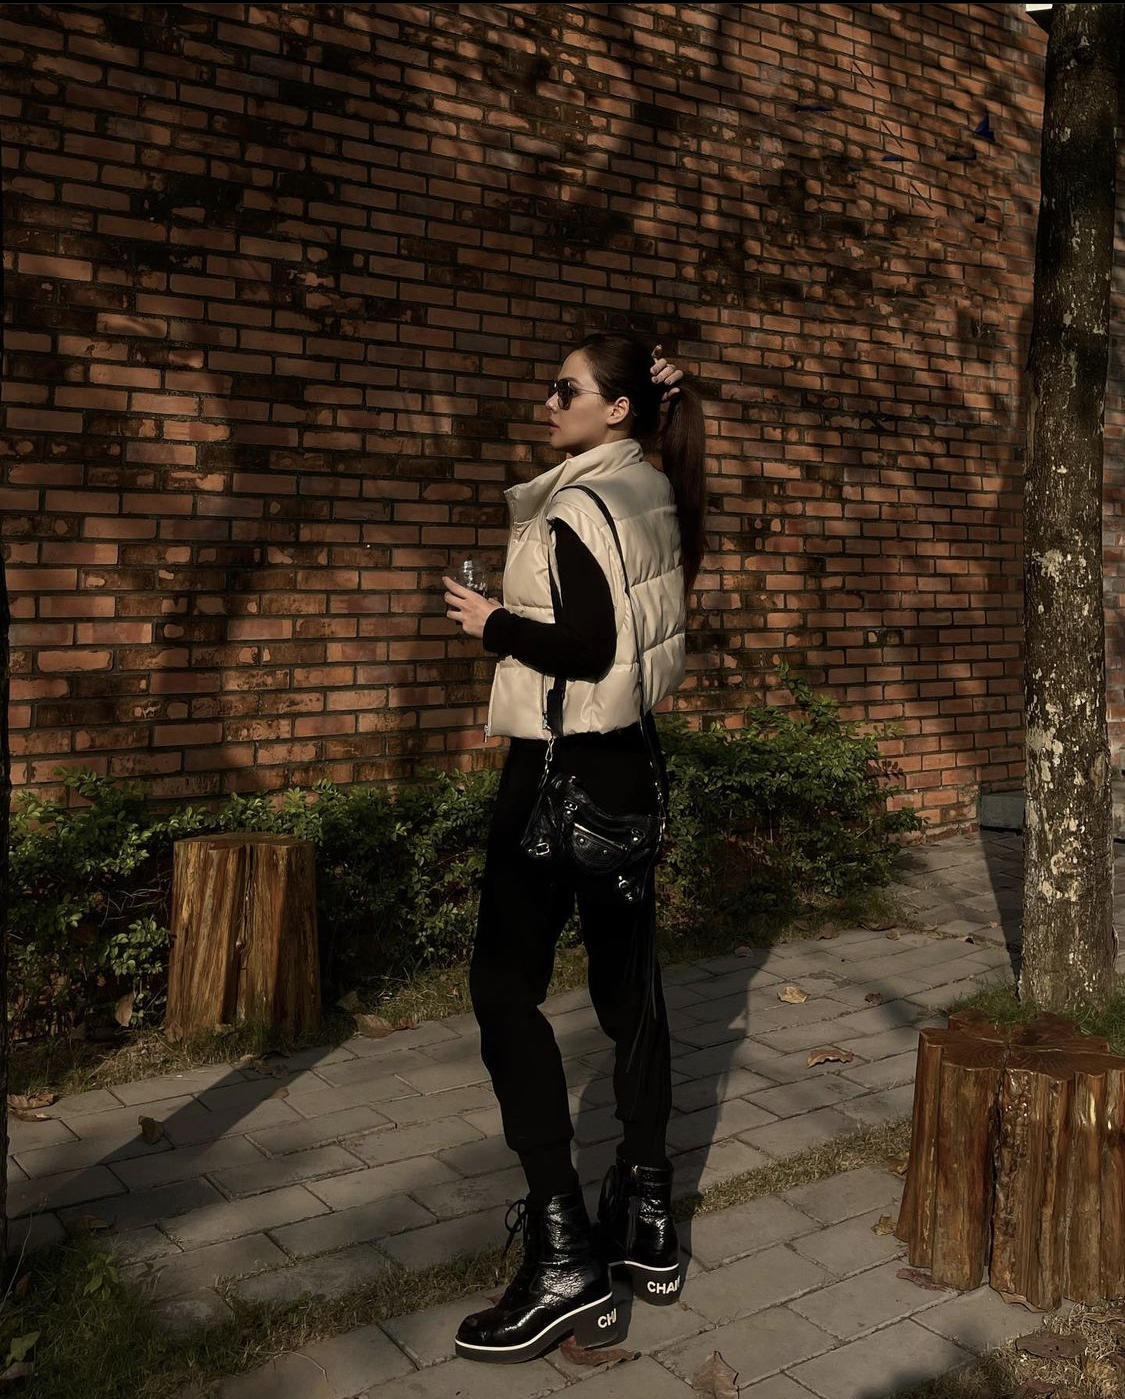 Thả dáng trên phố với trang phục cá tính, bodysuit đen kết hợp với áo phao trắng và boots Chanel sang chảnh, Phanh Lee trẻ trung, tràn đầy sức sống.